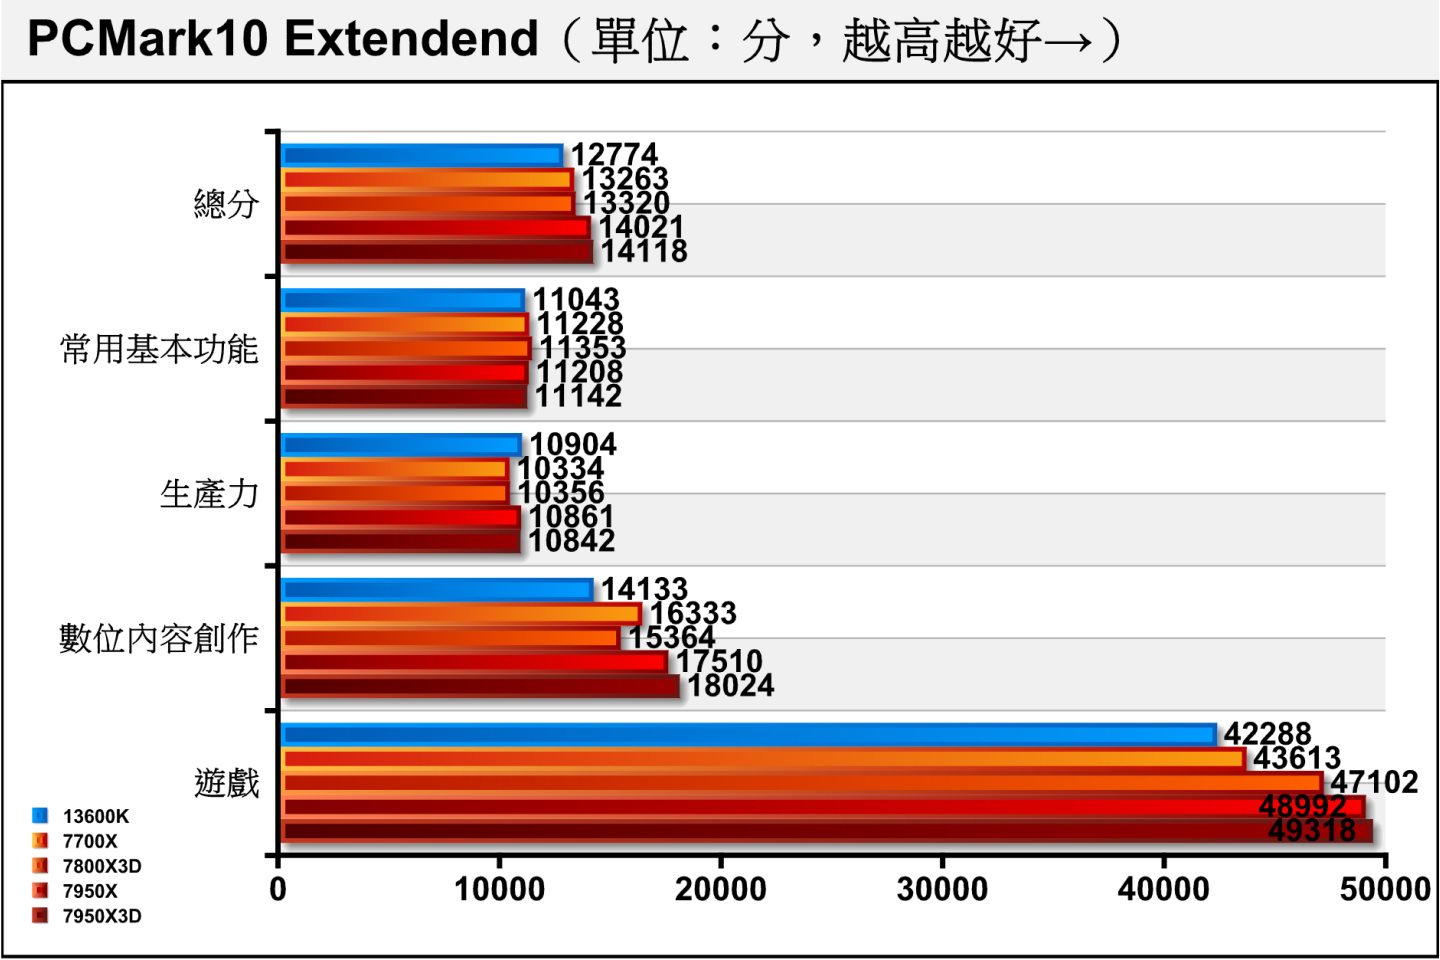 在綜合效能測試項目PCMark10 Extendend，可以看到7800X3D與7700X的表現相當接近，但7800X3D的遊戲效能比較出色。（13900K先前無法完成OpenCL測試故缺少成績）